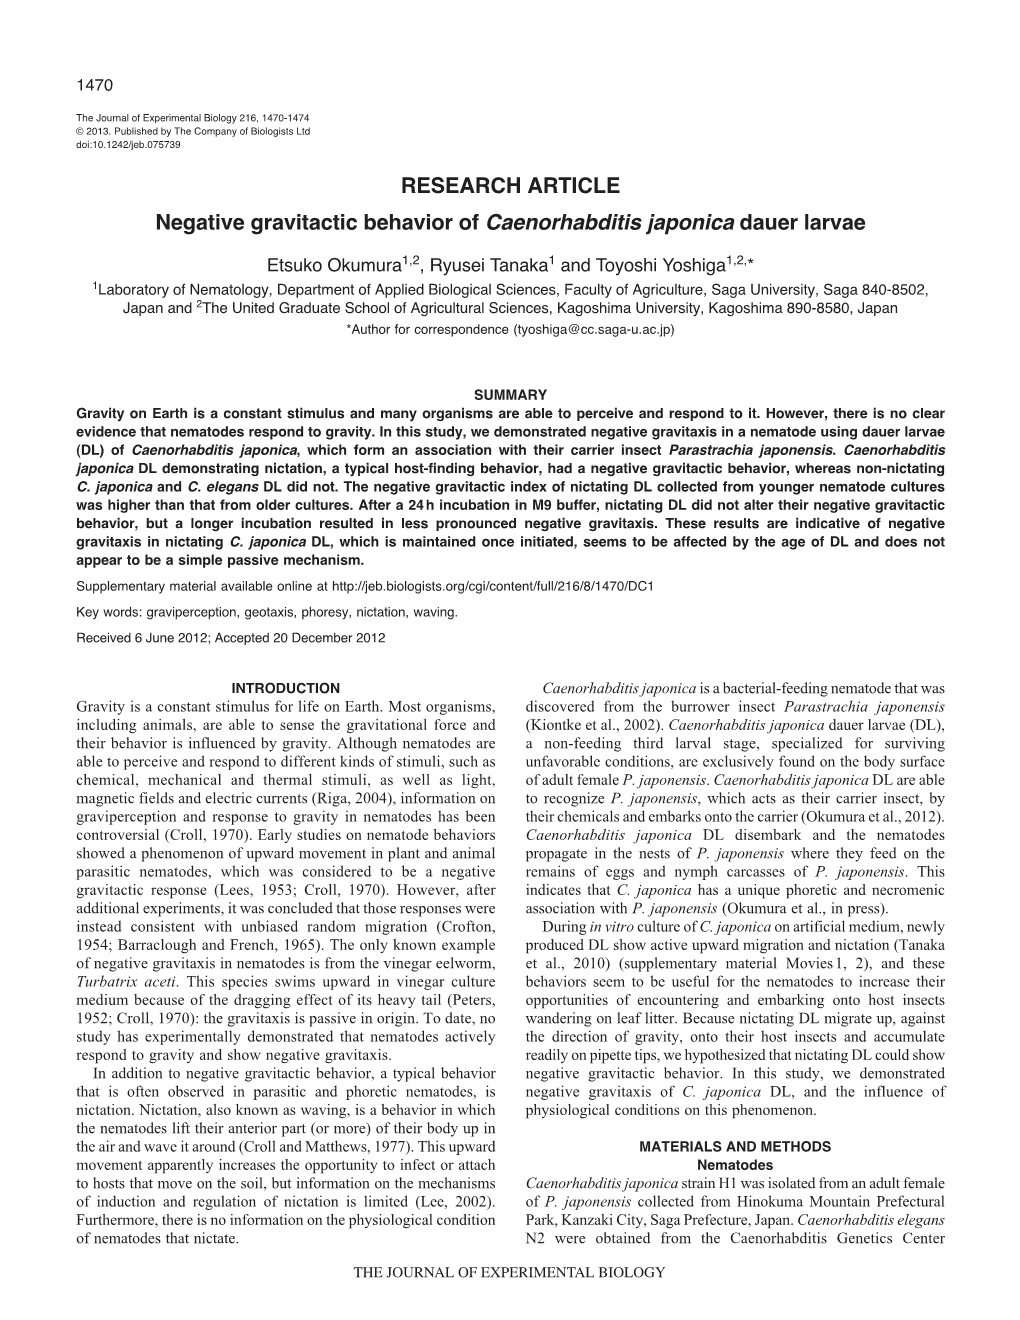 RESEARCH ARTICLE Negative Gravitactic Behavior of Caenorhabditis Japonica Dauer Larvae